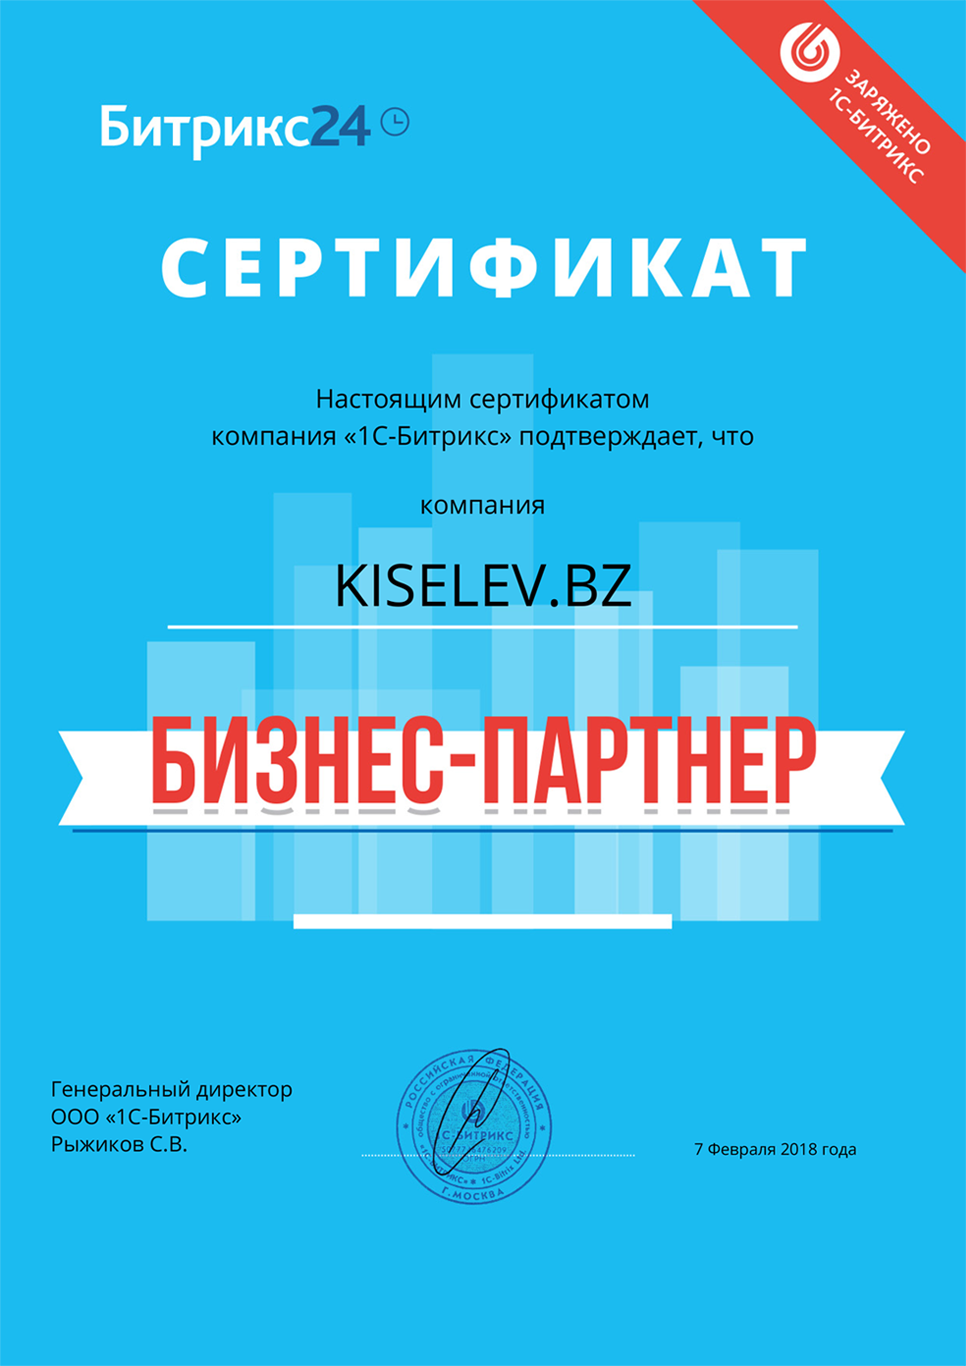 Сертификат партнёра по АМОСРМ в Новочеркасске